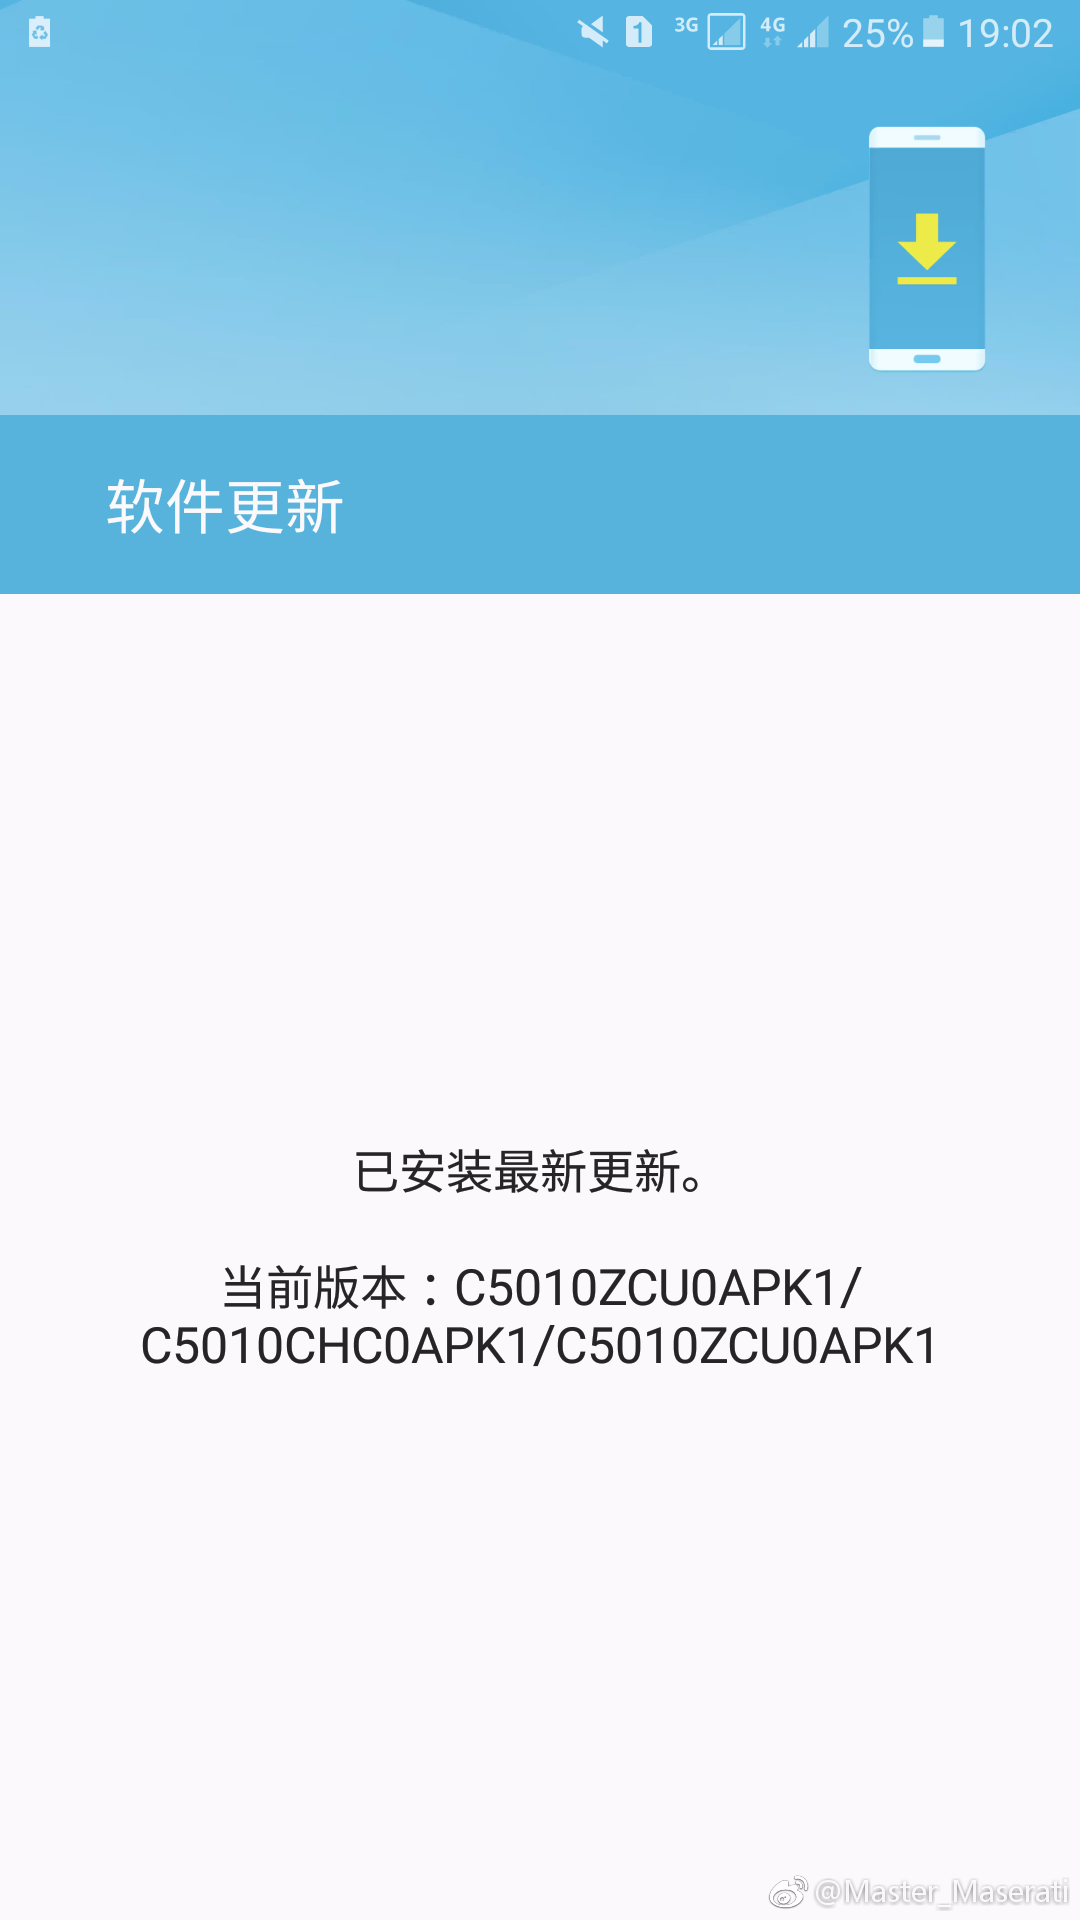 Samsung Galaxy C5 Pro recibe actualización OTA para compilar APK1